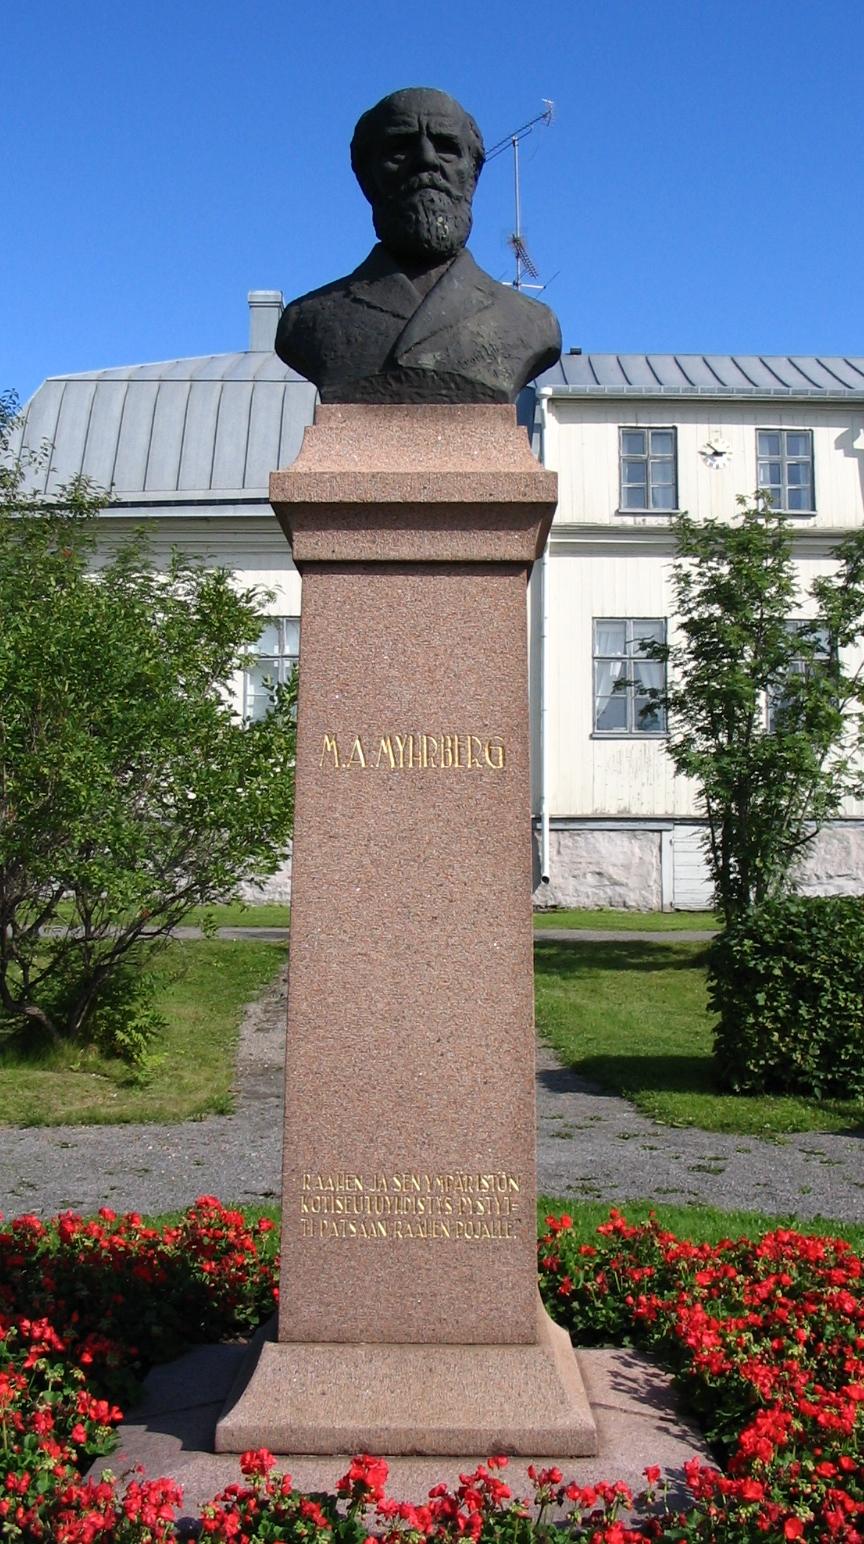 Myhrbergin patsas puiston kulmassa.